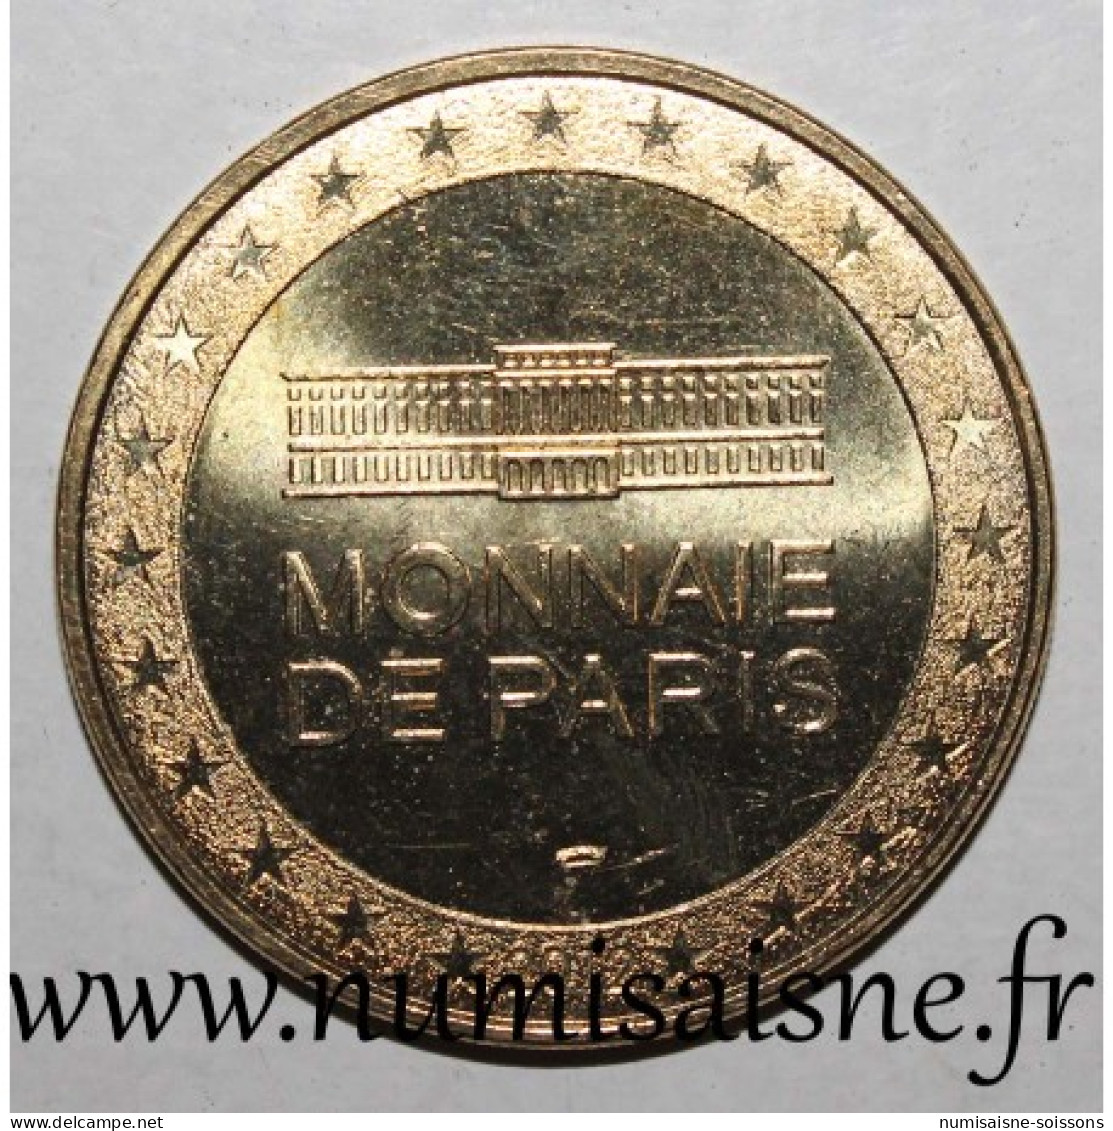 75 - PARIS - ÉGLISE SAINT GERMAIN DES PRÉS - Monnaie De Paris - 2012 - 2012